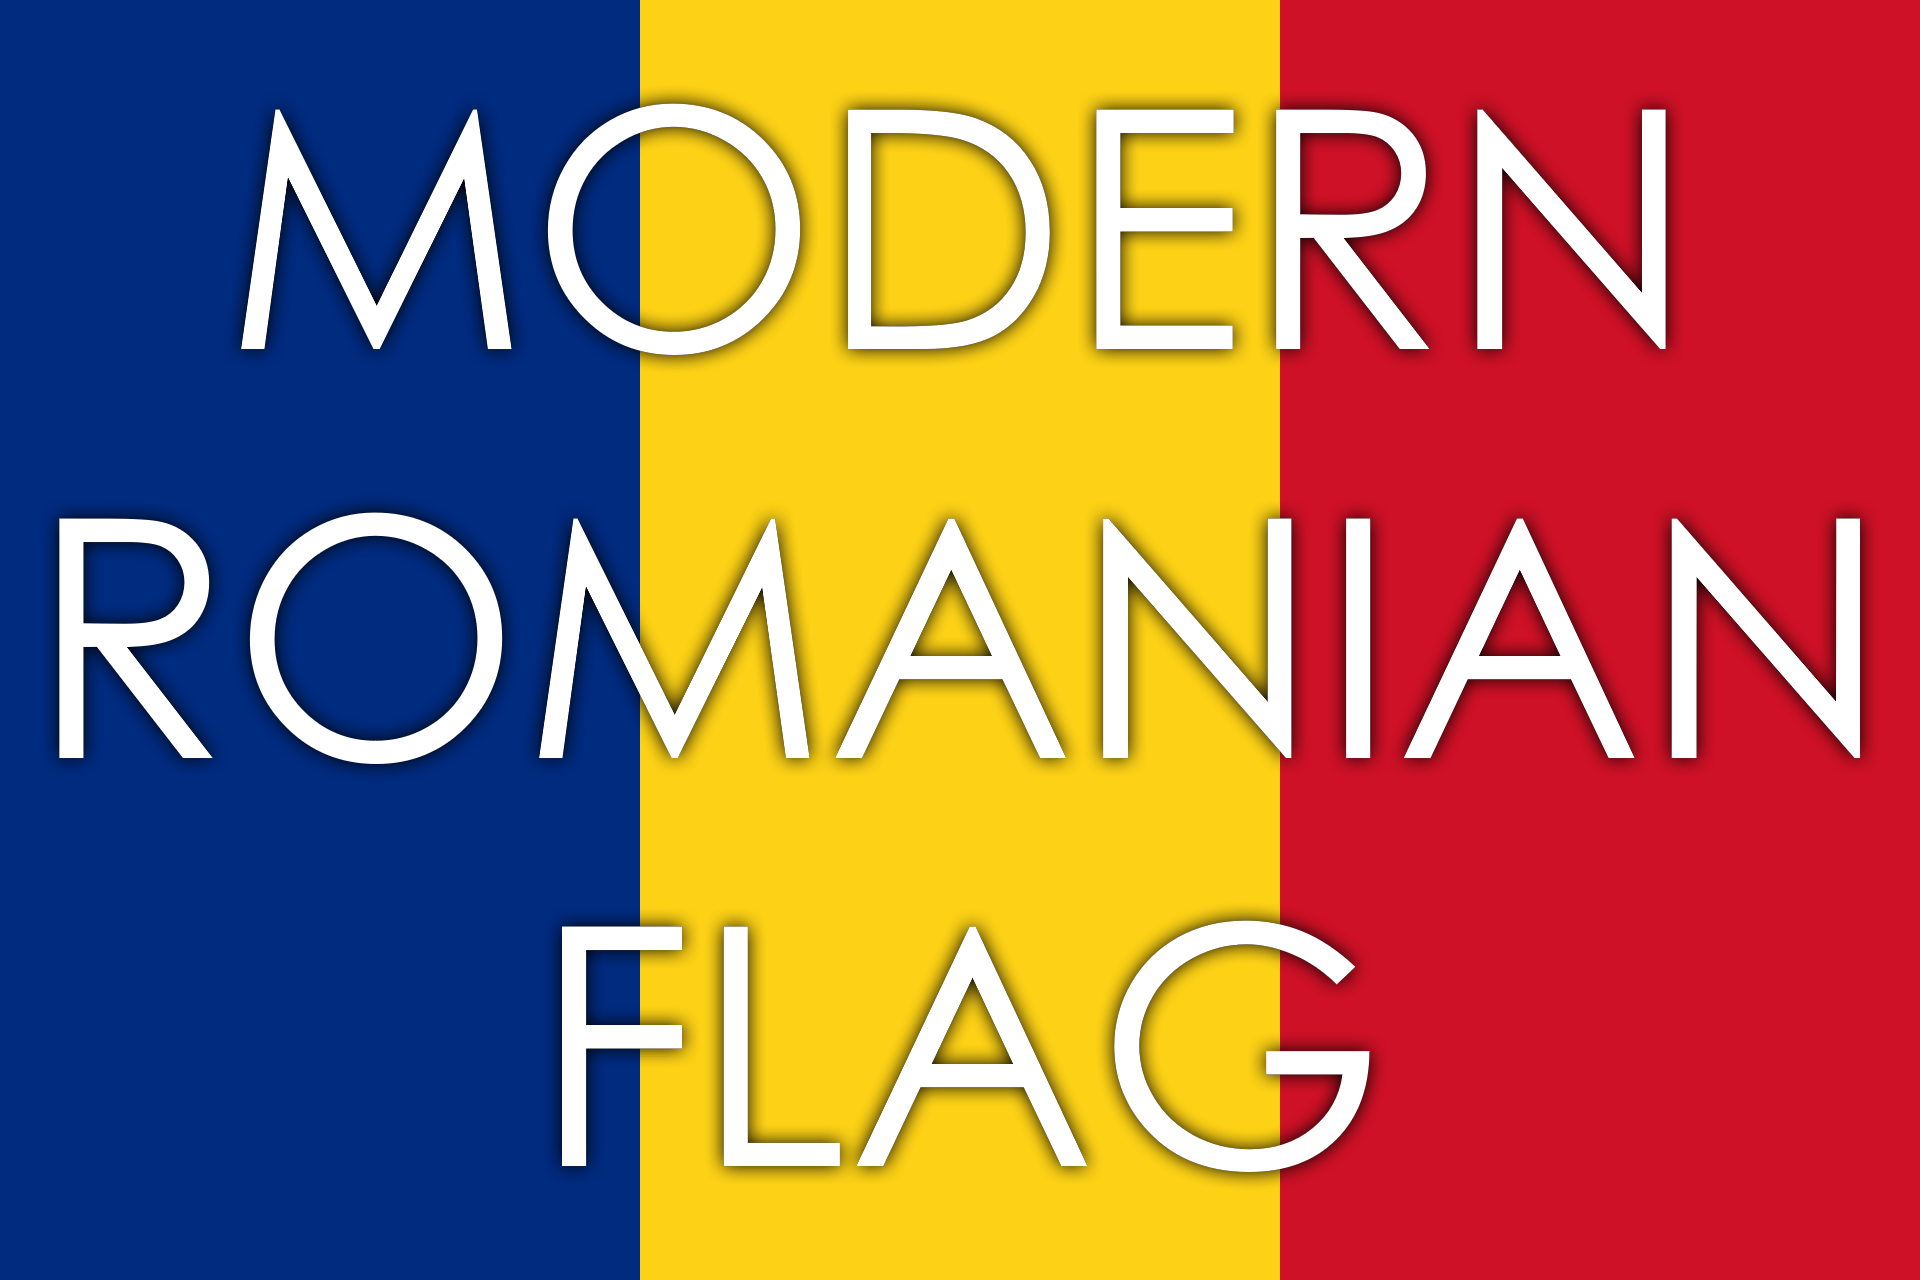 Modern Romania